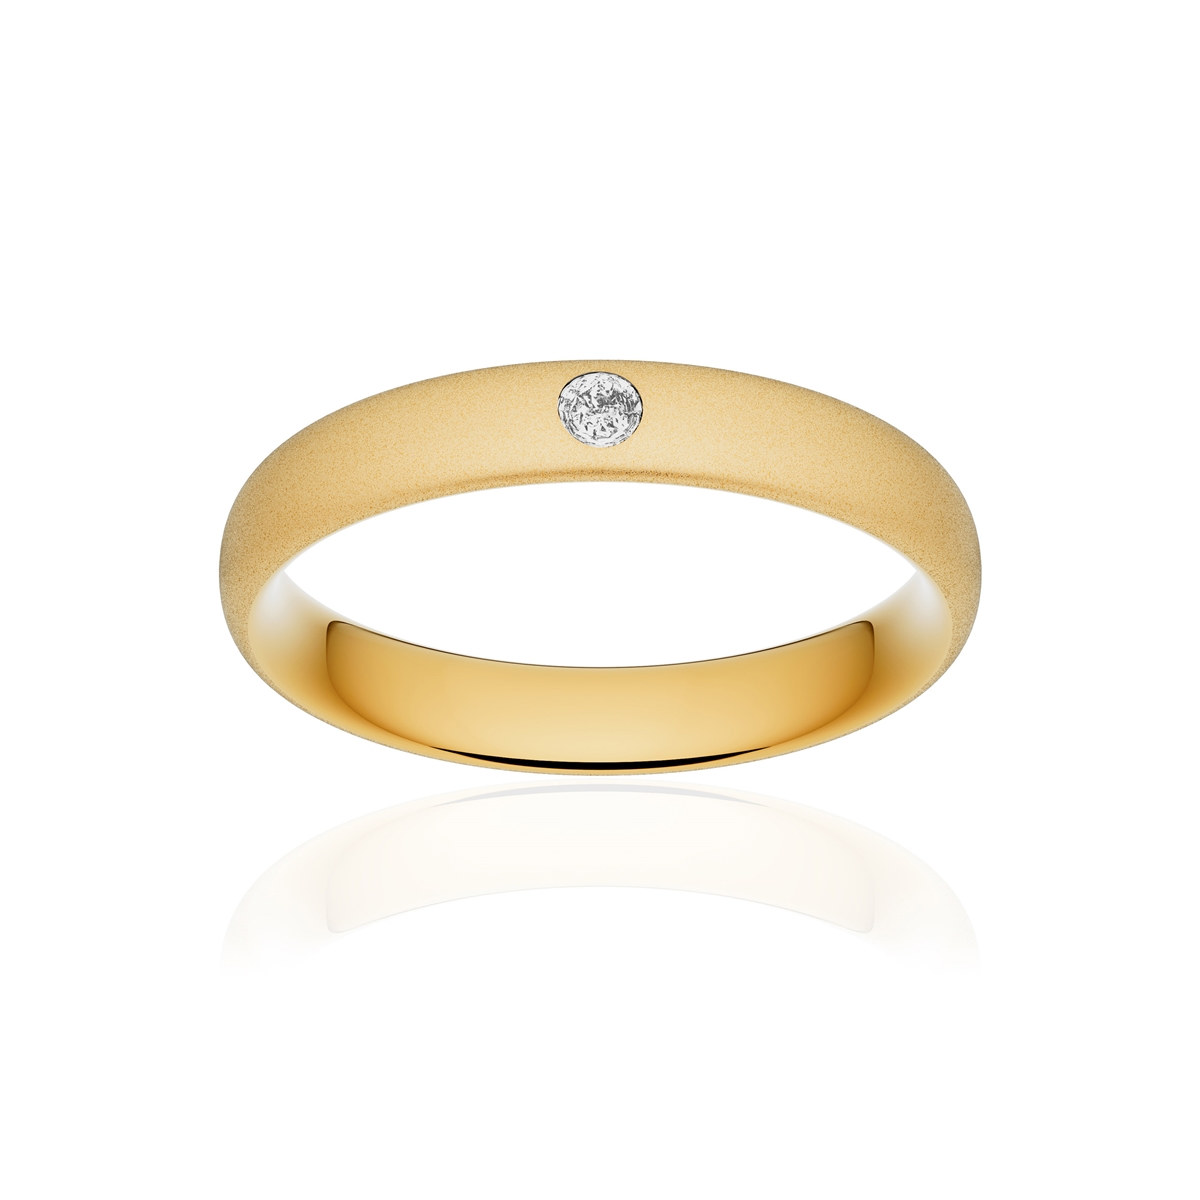 Alliance or 750 jaune sablé ruban confort 4mm diamant brillant